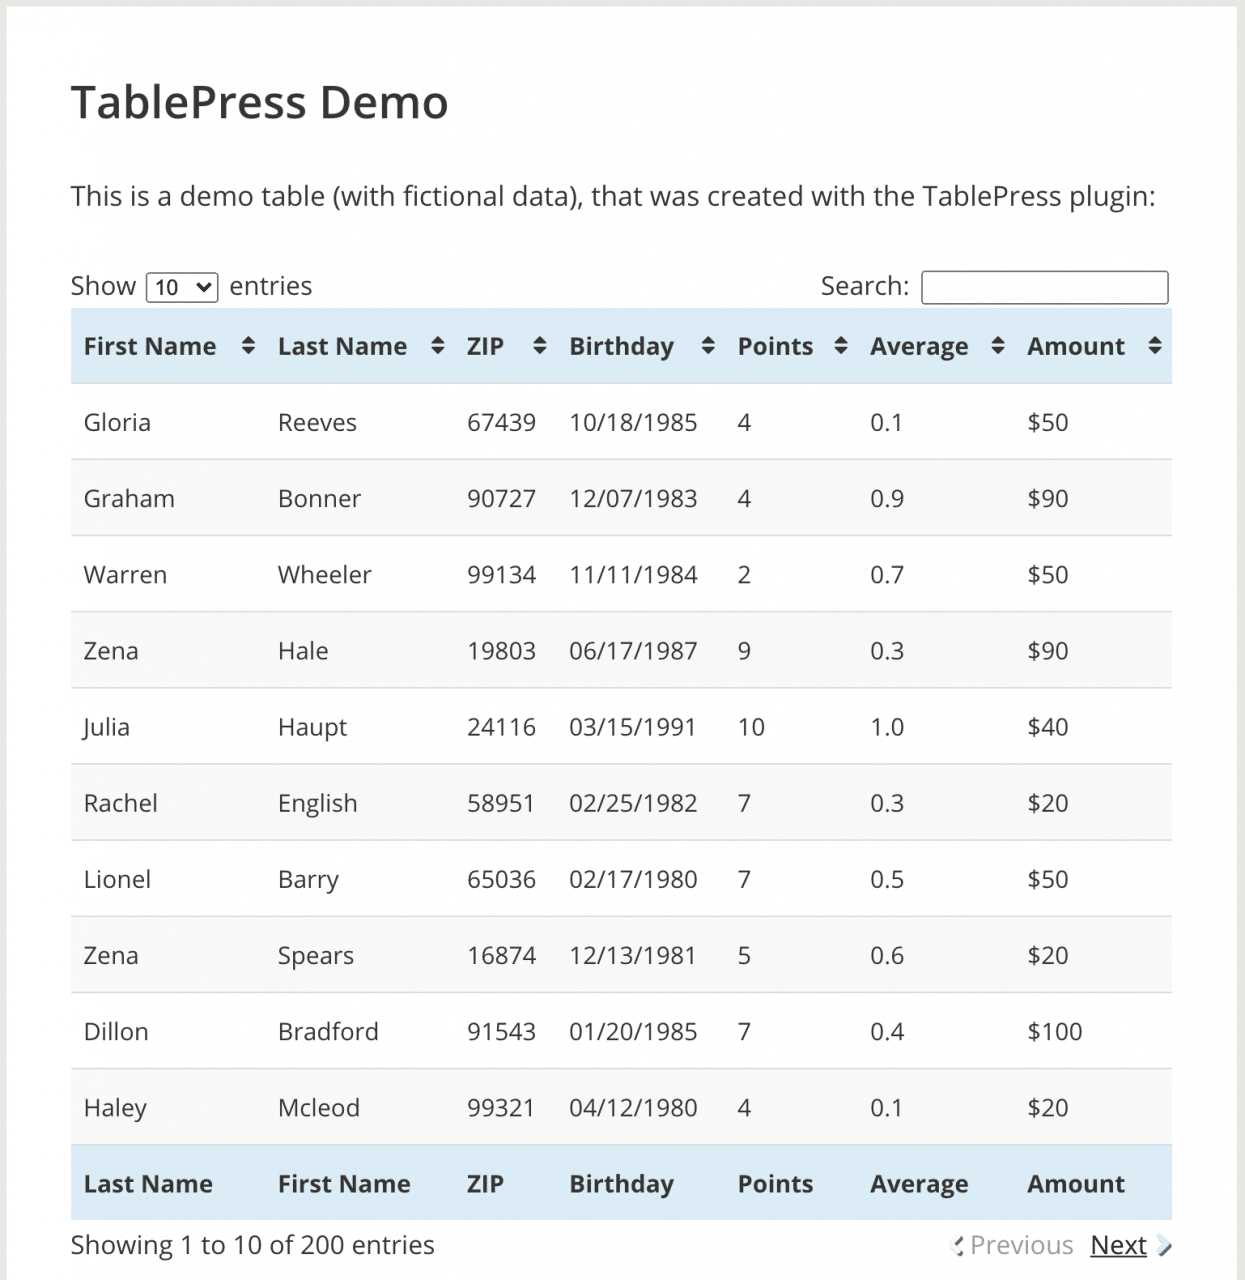 Demostración de TablePress que muestra datos ficticios